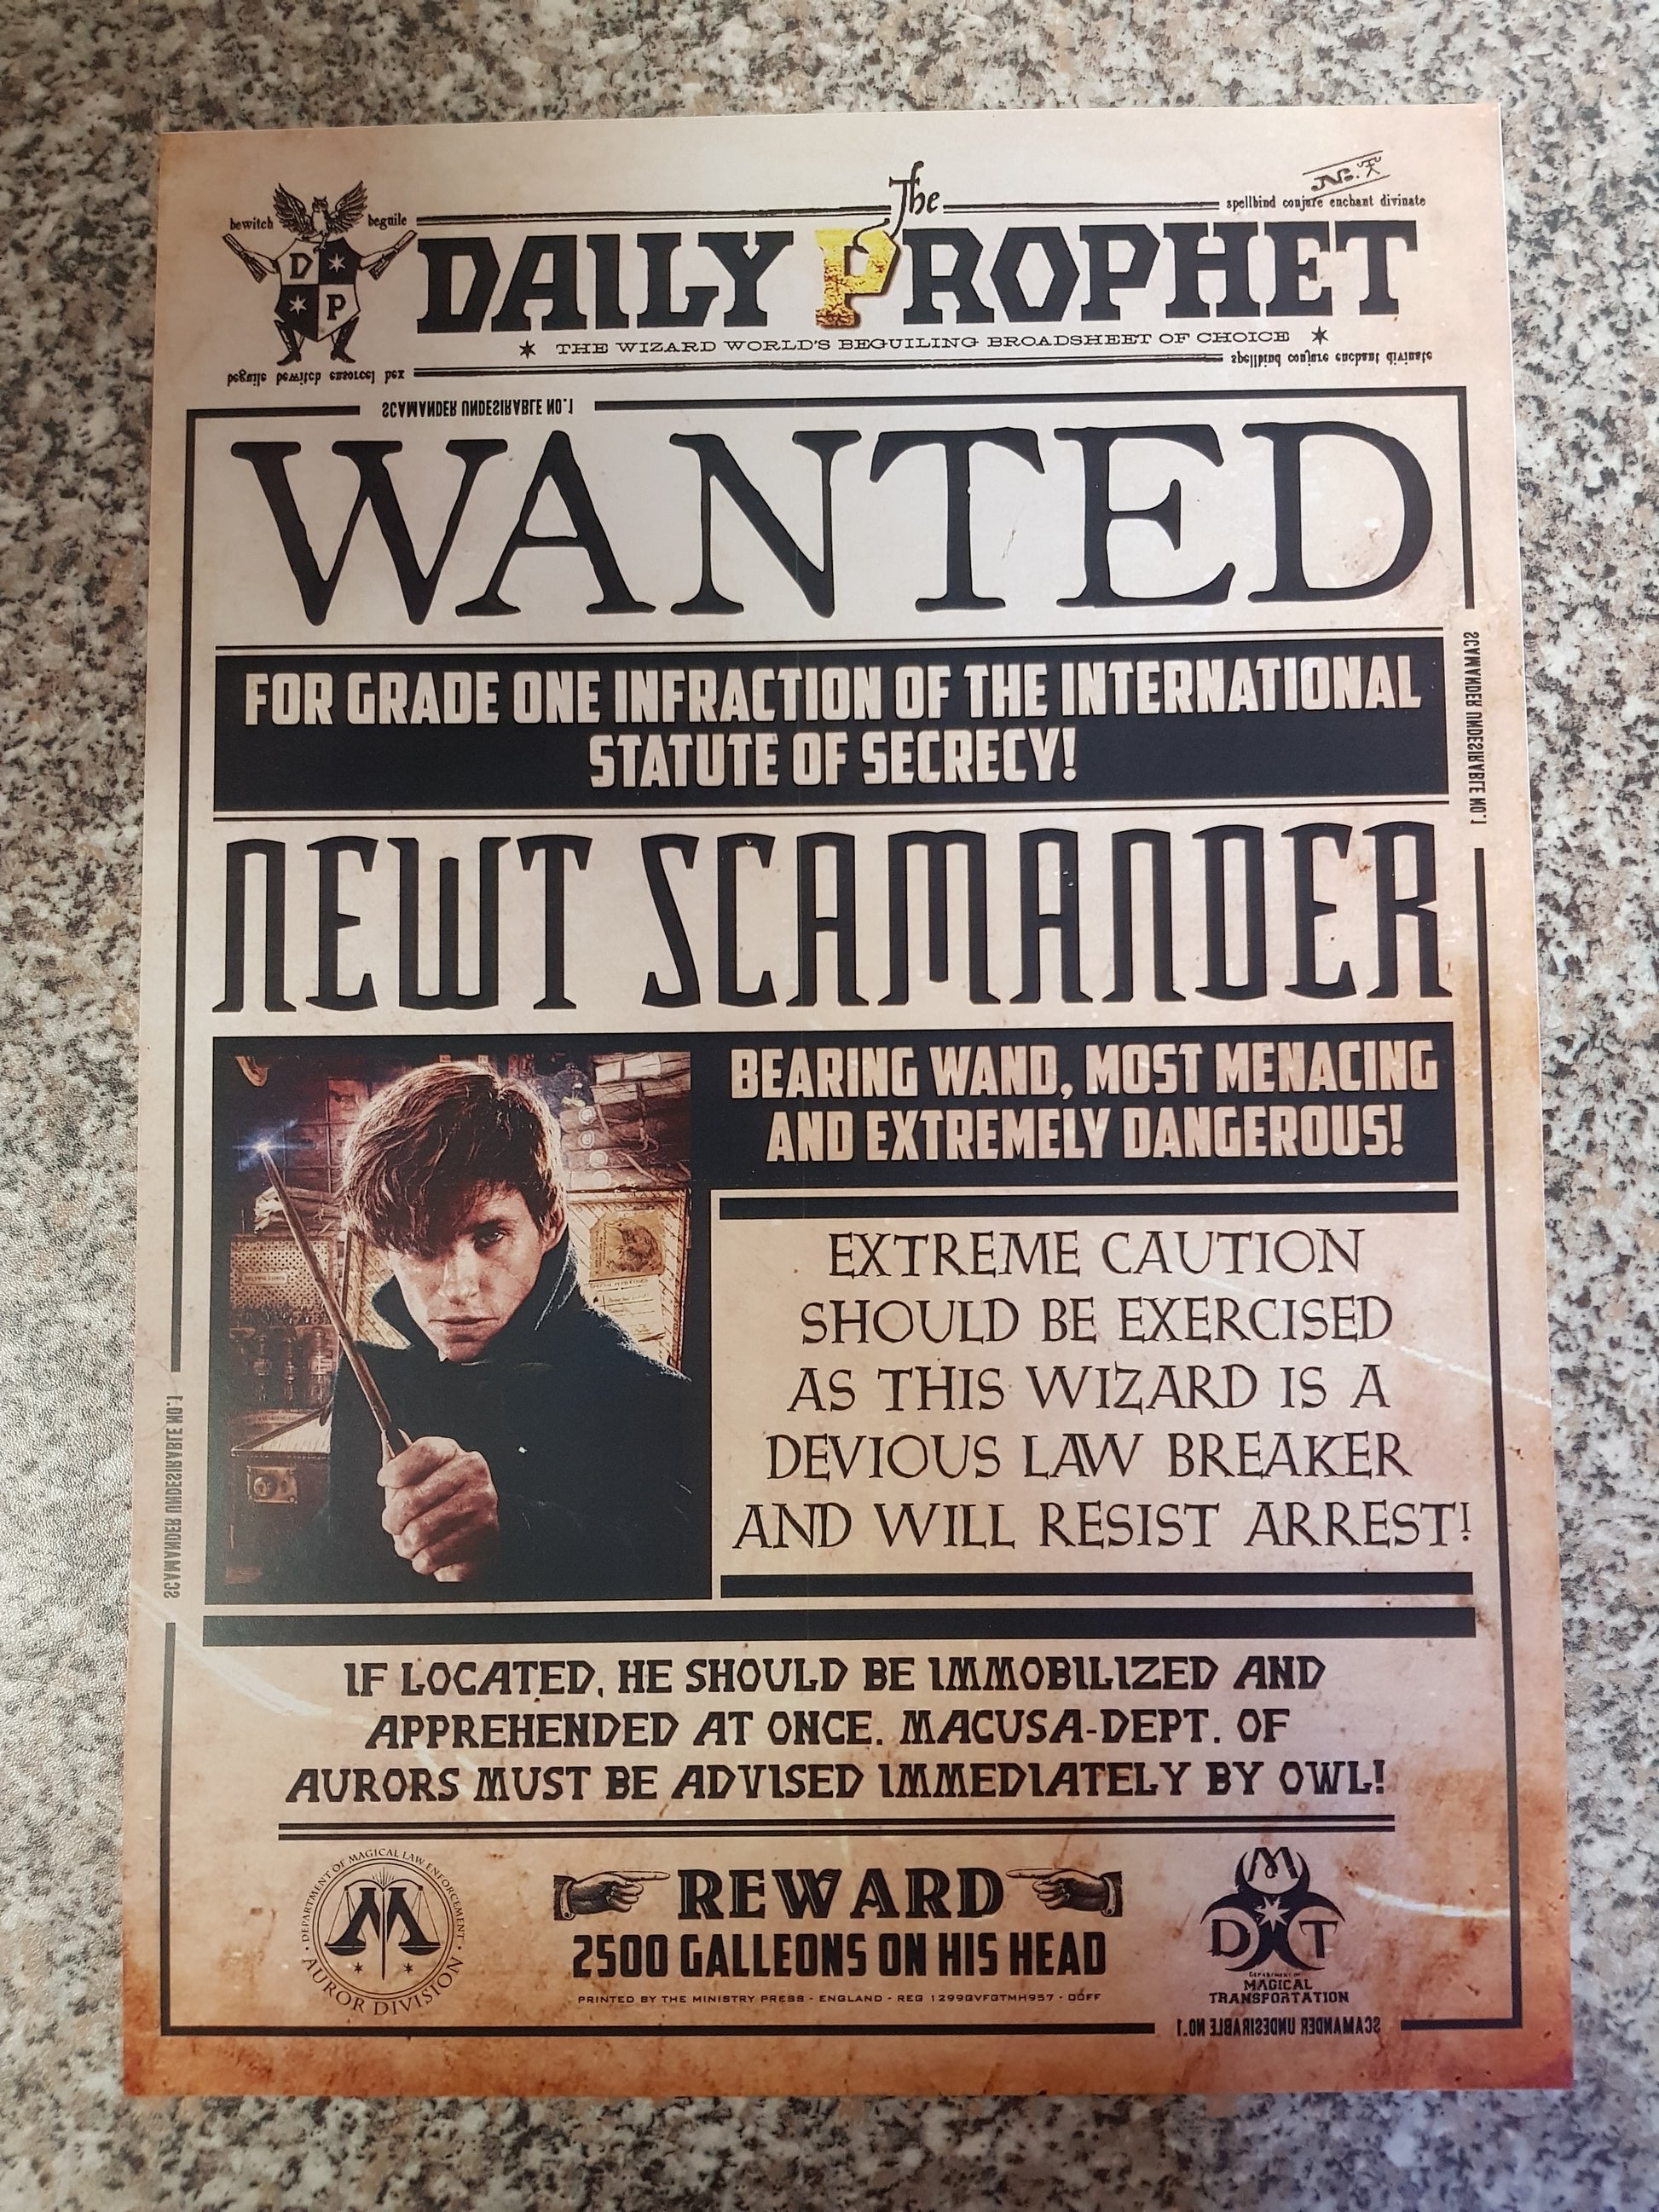 Phantastische Tierwesen - Poster - Wanted Newt Scamander (42 cm x 30 cm)